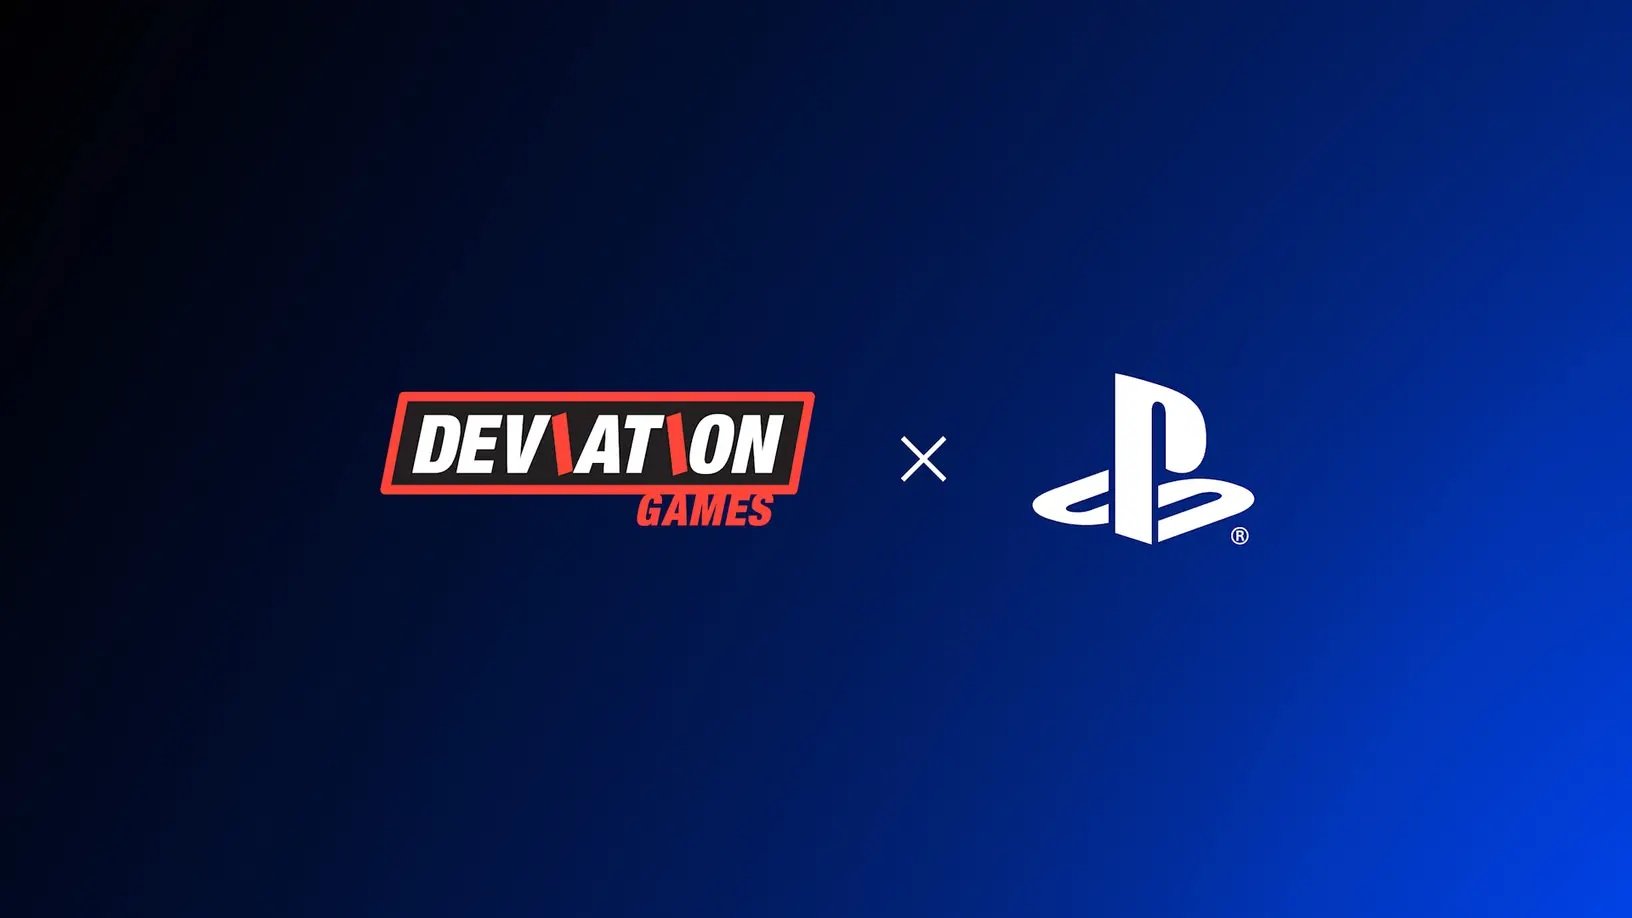 A Sony állítólag stúdiót alapít a Deviation Games korábbi fejlesztőivel